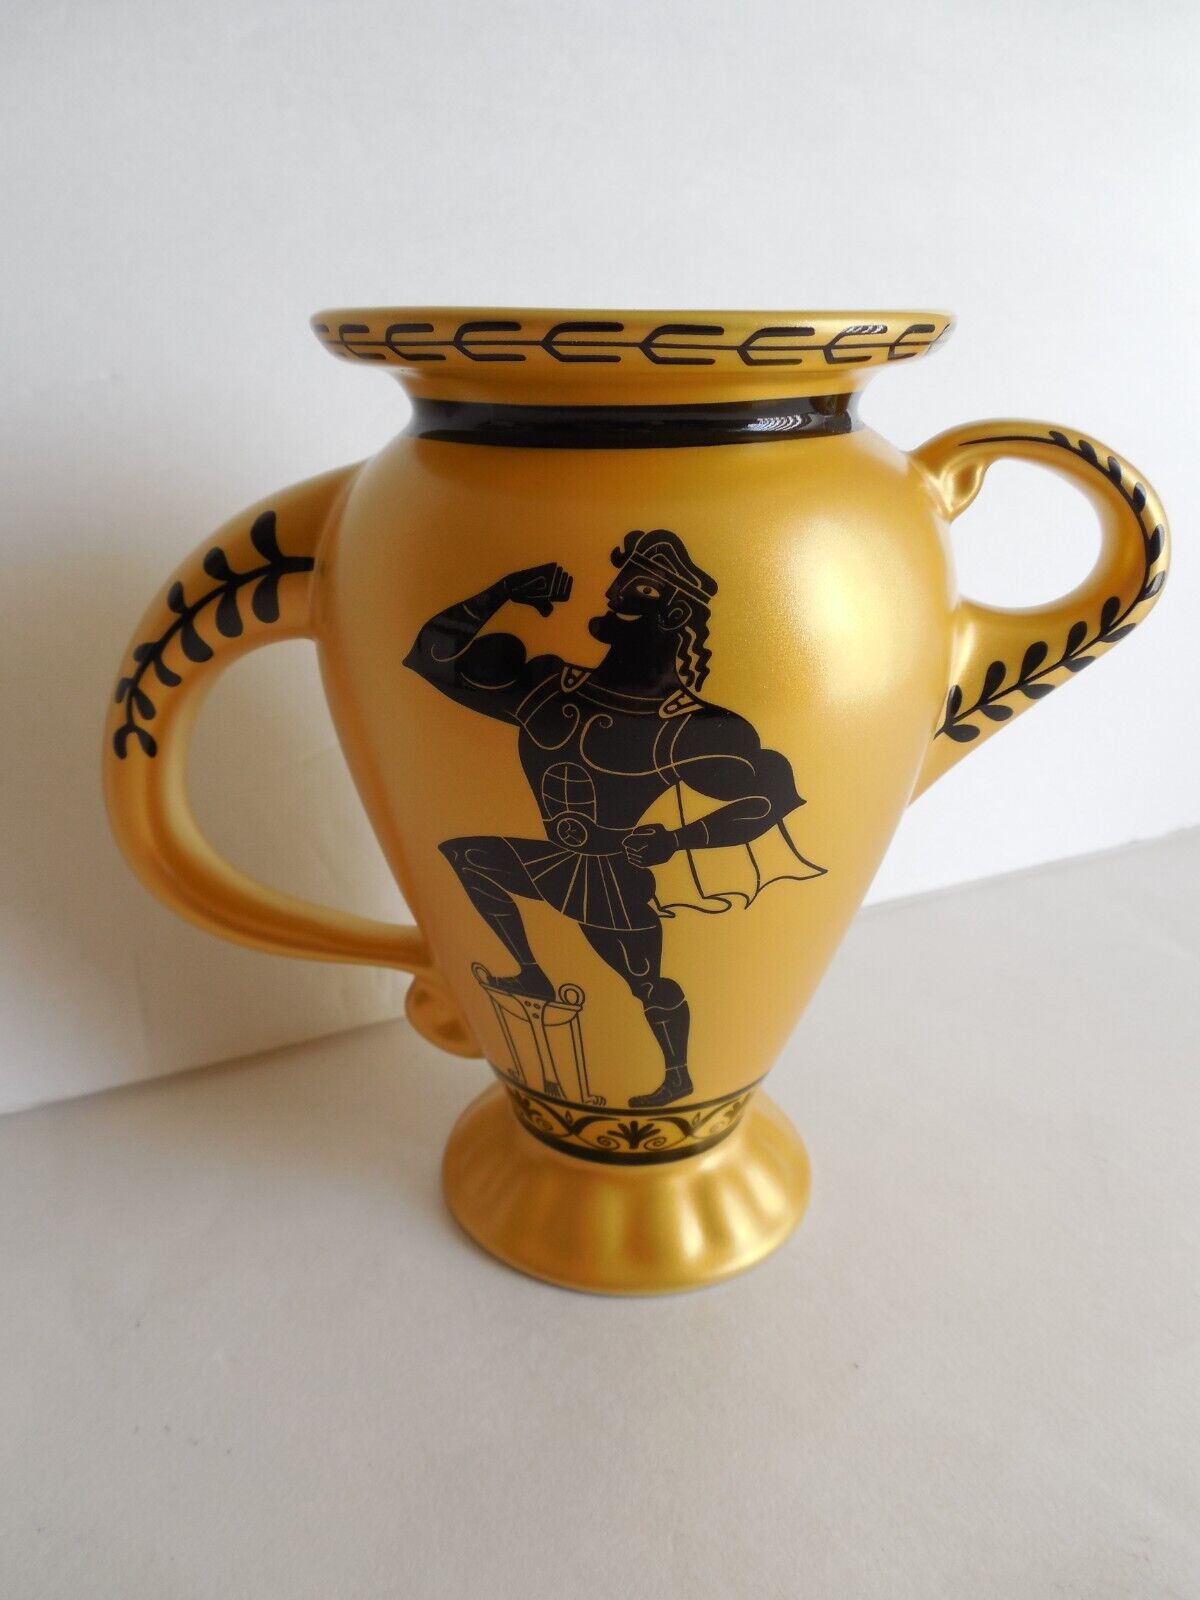 New Disney Parks Hercules Posing 25th Anniversary Figural Ceramic Vase Mug Cup